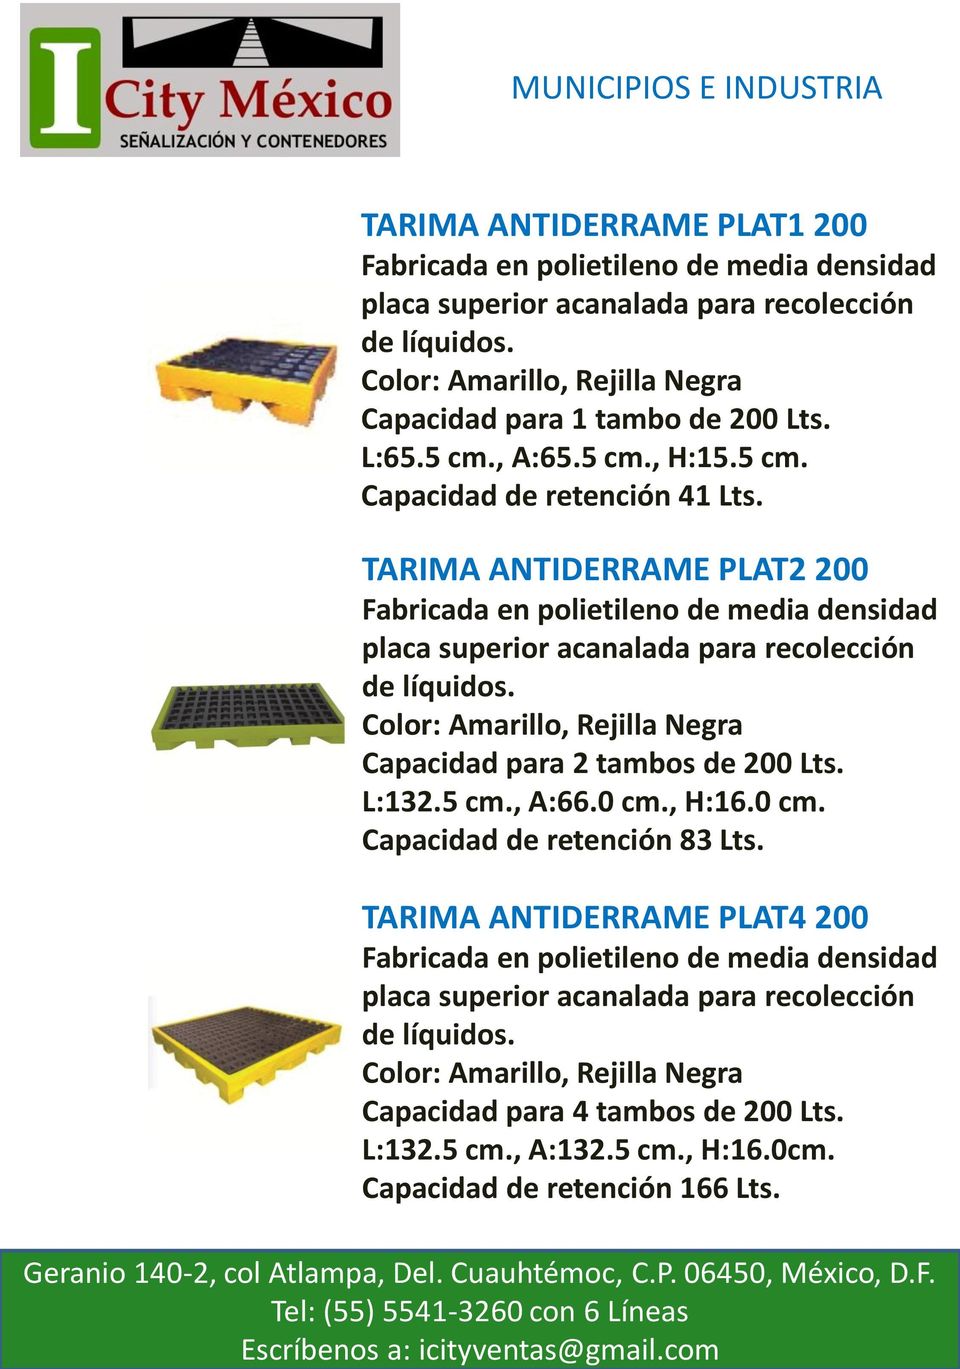 TARIMA ANTIDERRAME PLAT2 200 Fabricada en polietileno de media densidad placa superior acanalada para recolección de líquidos. Color: Amarillo, Rejilla Negra Capacidad para 2 tambos de 200 Lts. L:132.